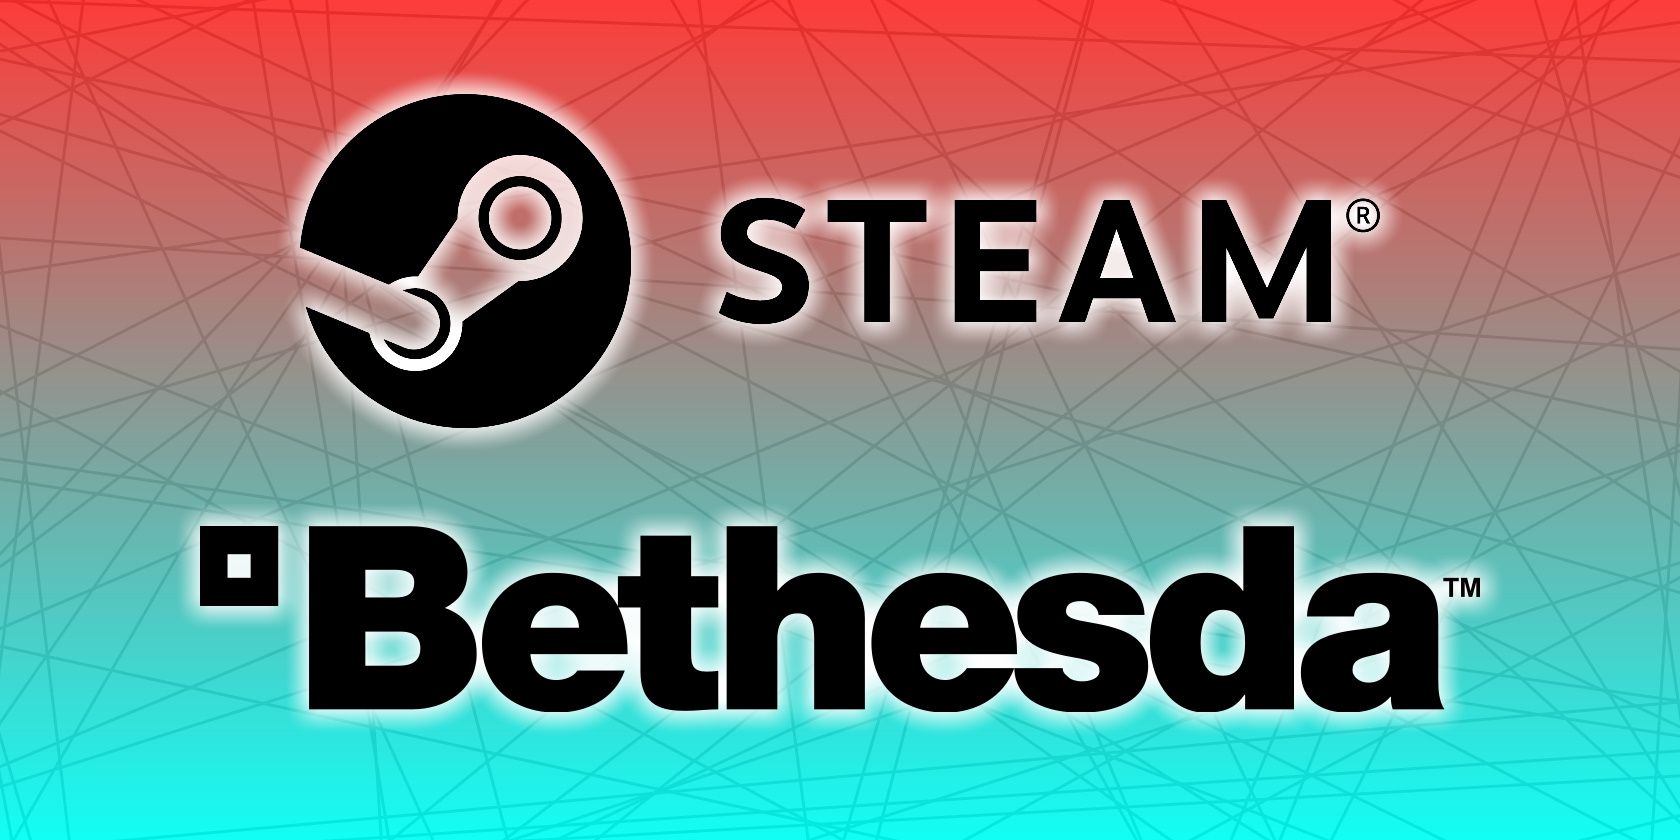 steam bethesda logo feature